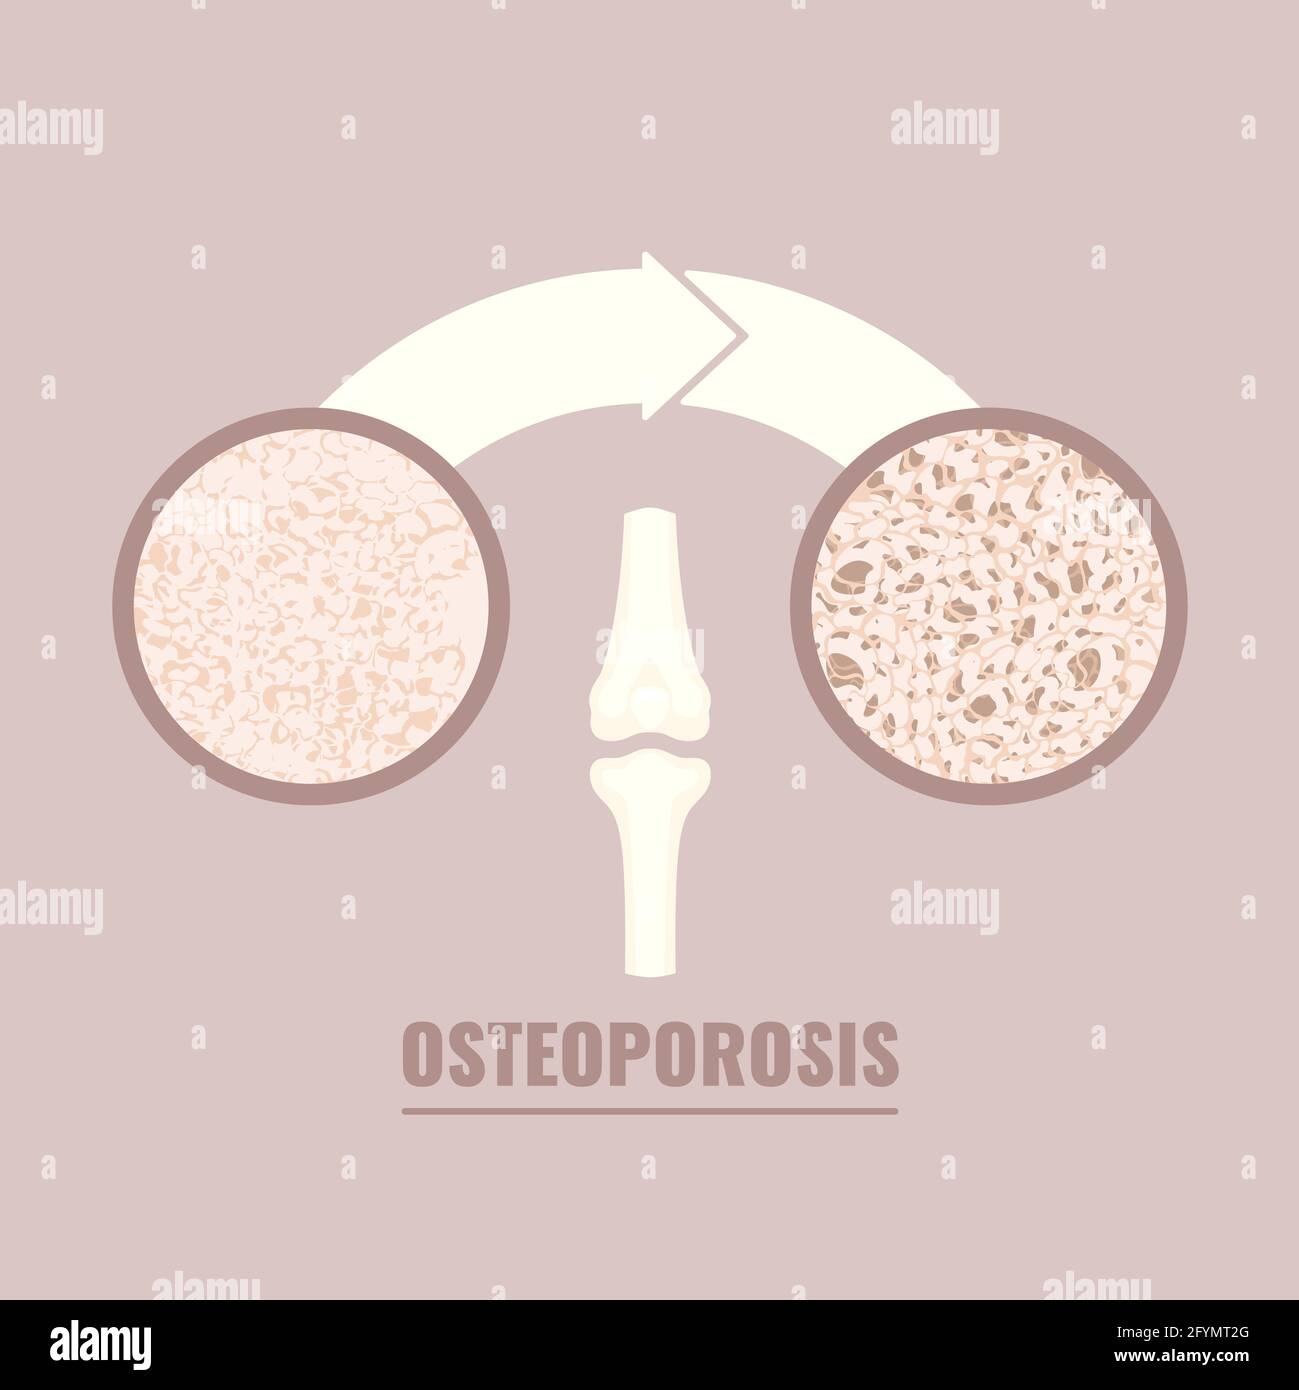 Ostéoporose, illustration conceptuelle Banque D'Images